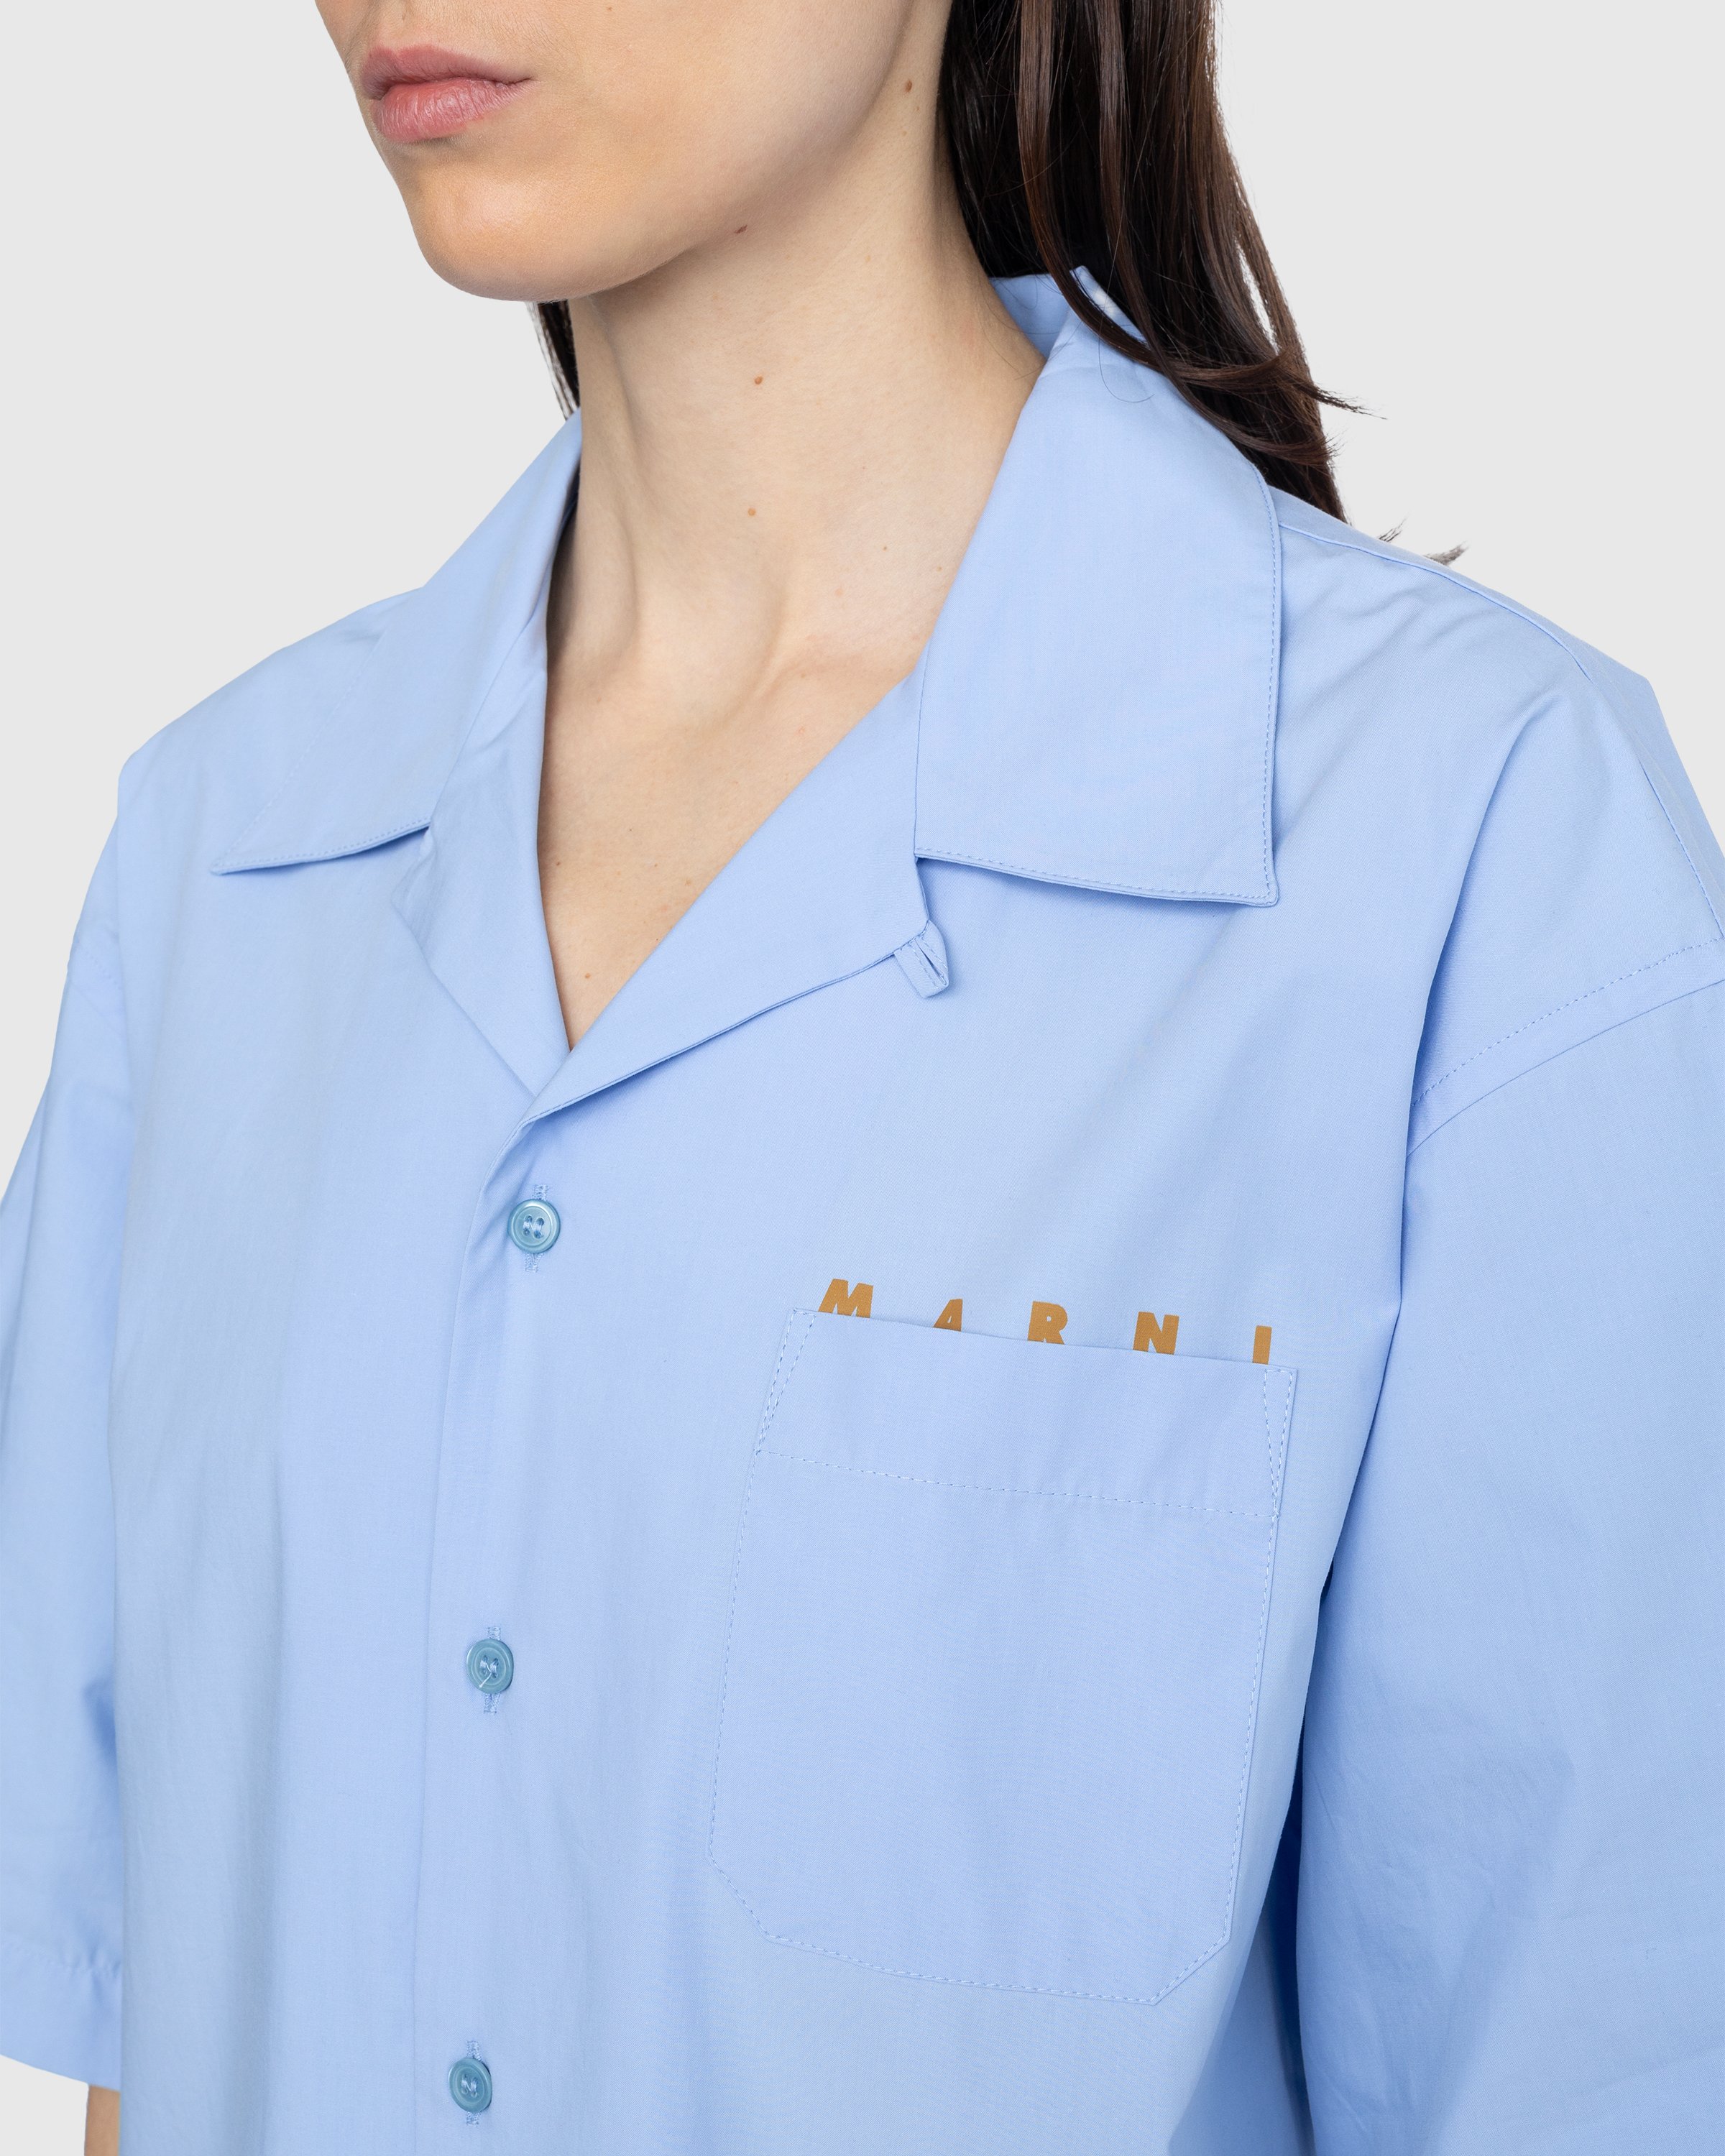 Marni - Logo Bowling Shirt Blue - Clothing - Blue - Image 5